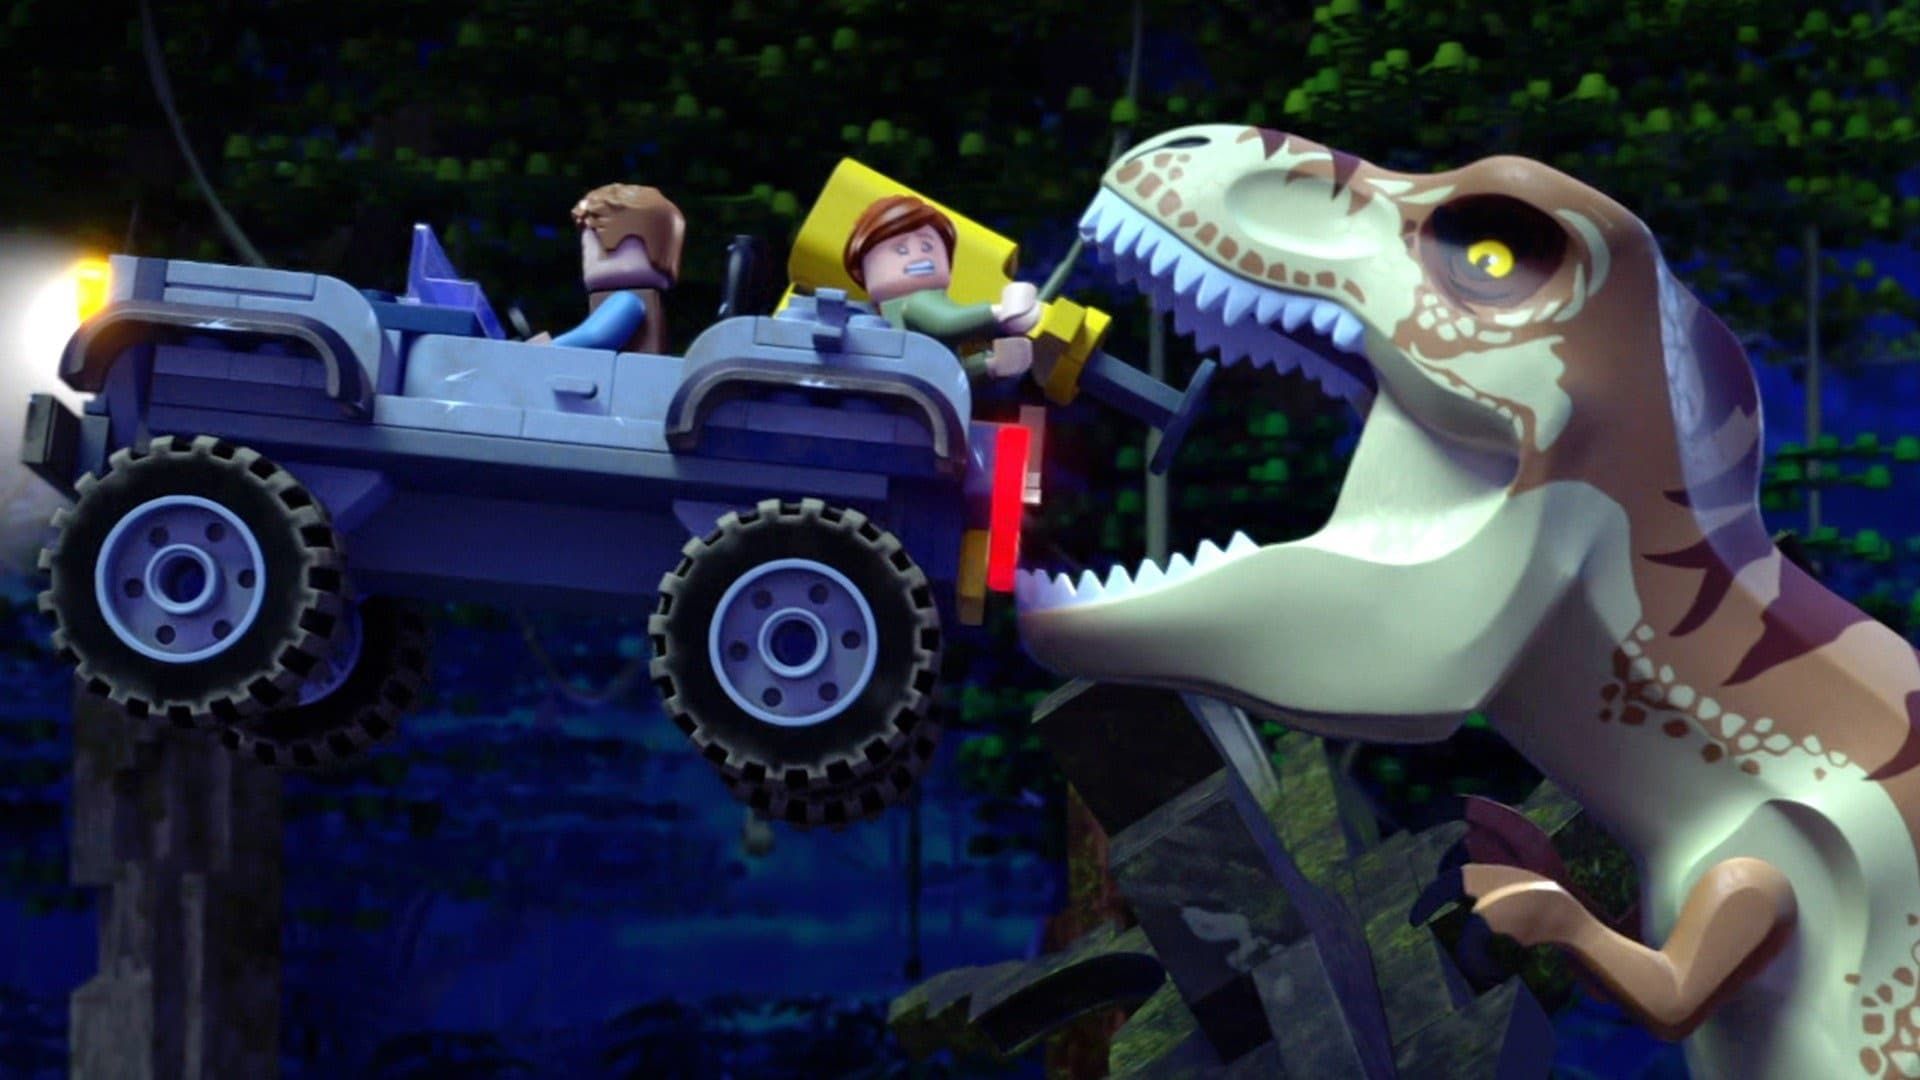 Lego Jurassic World: The Secret Exhibit background